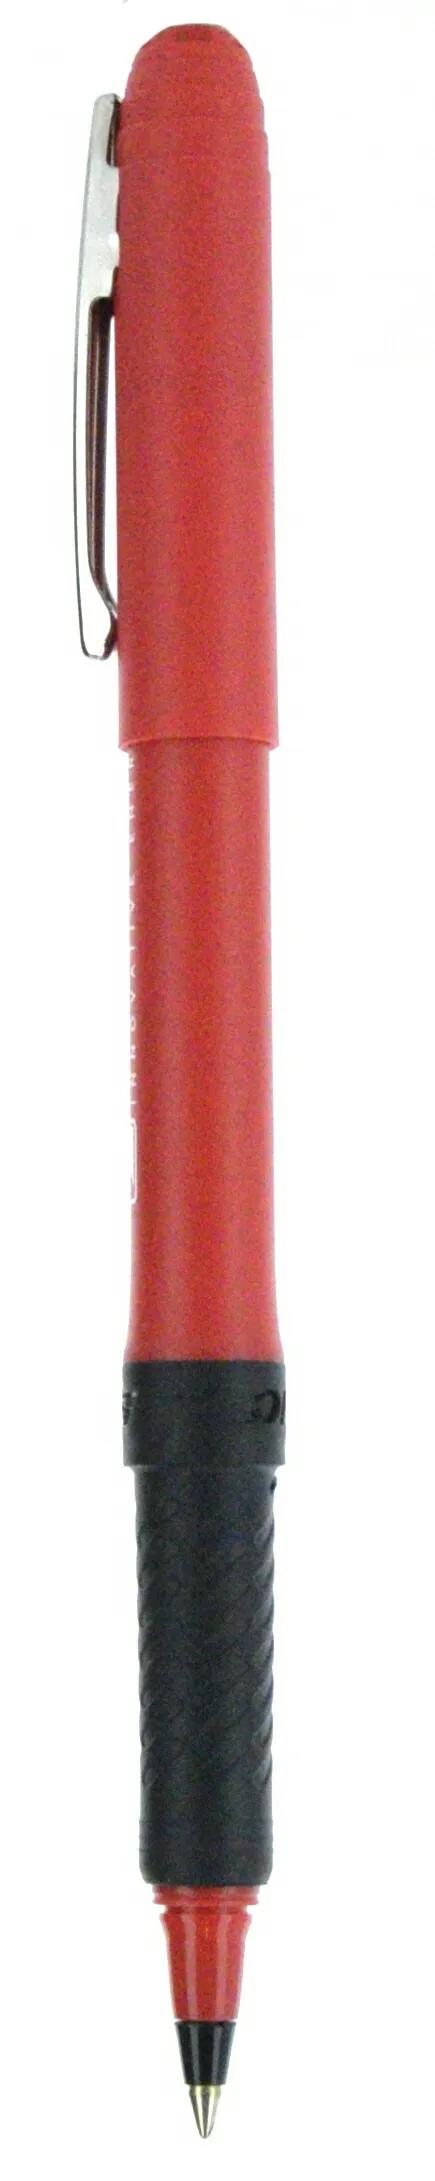 BIC® Grip Roller Pen 82 of 147